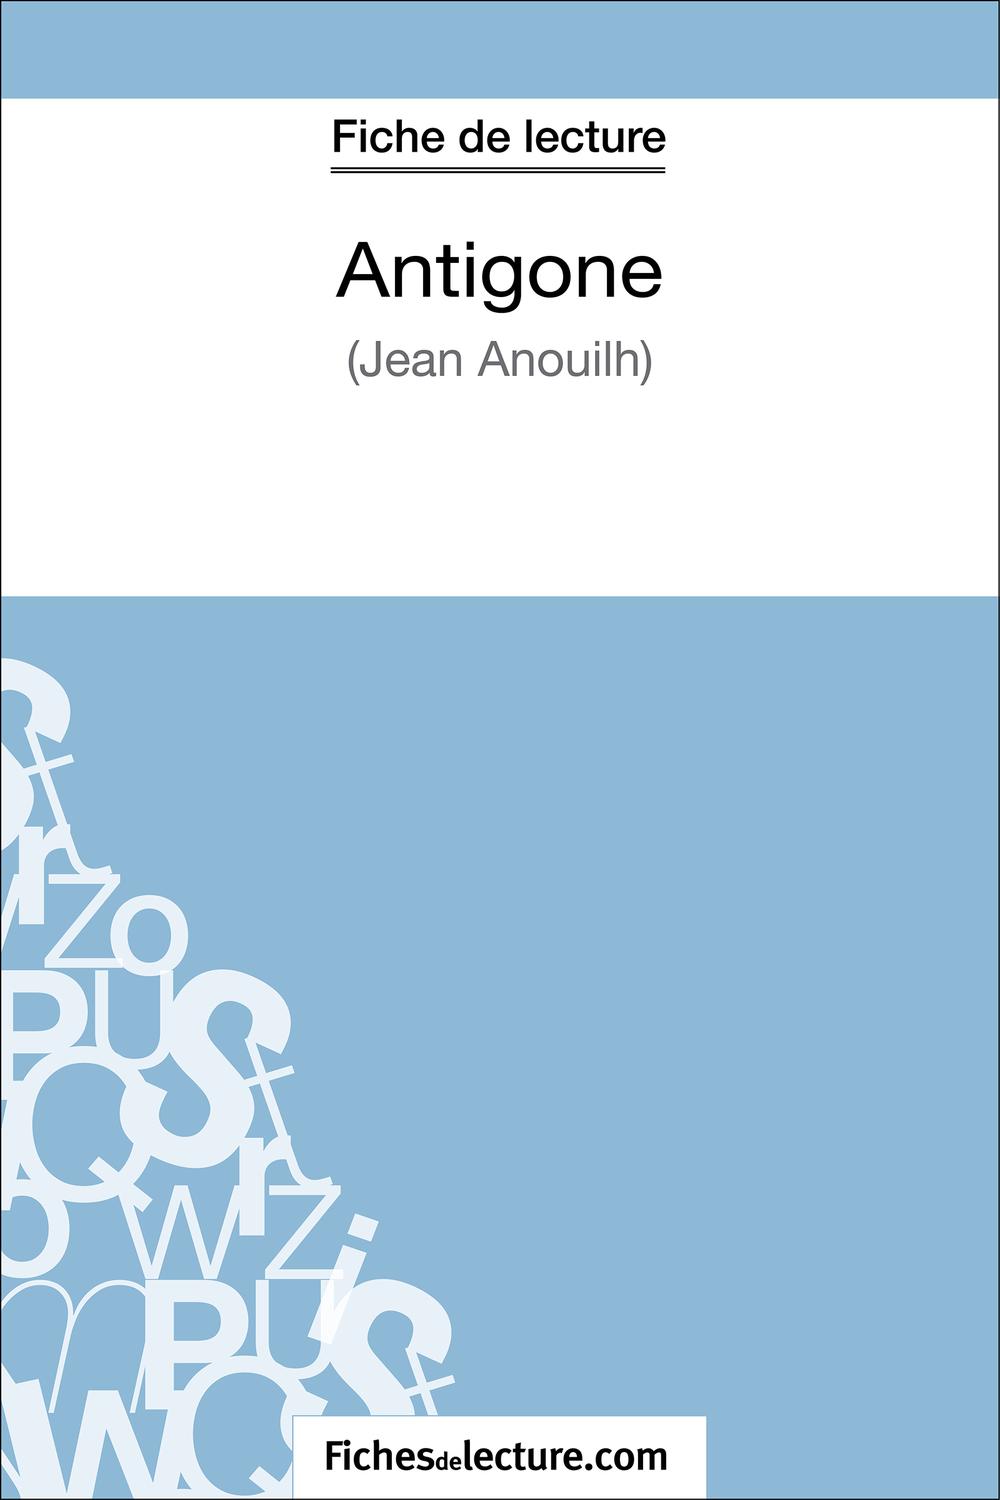 Antigone de Jean Anouilh (Fiche de lecture) - fichesdelecture, Sophie Lecomte